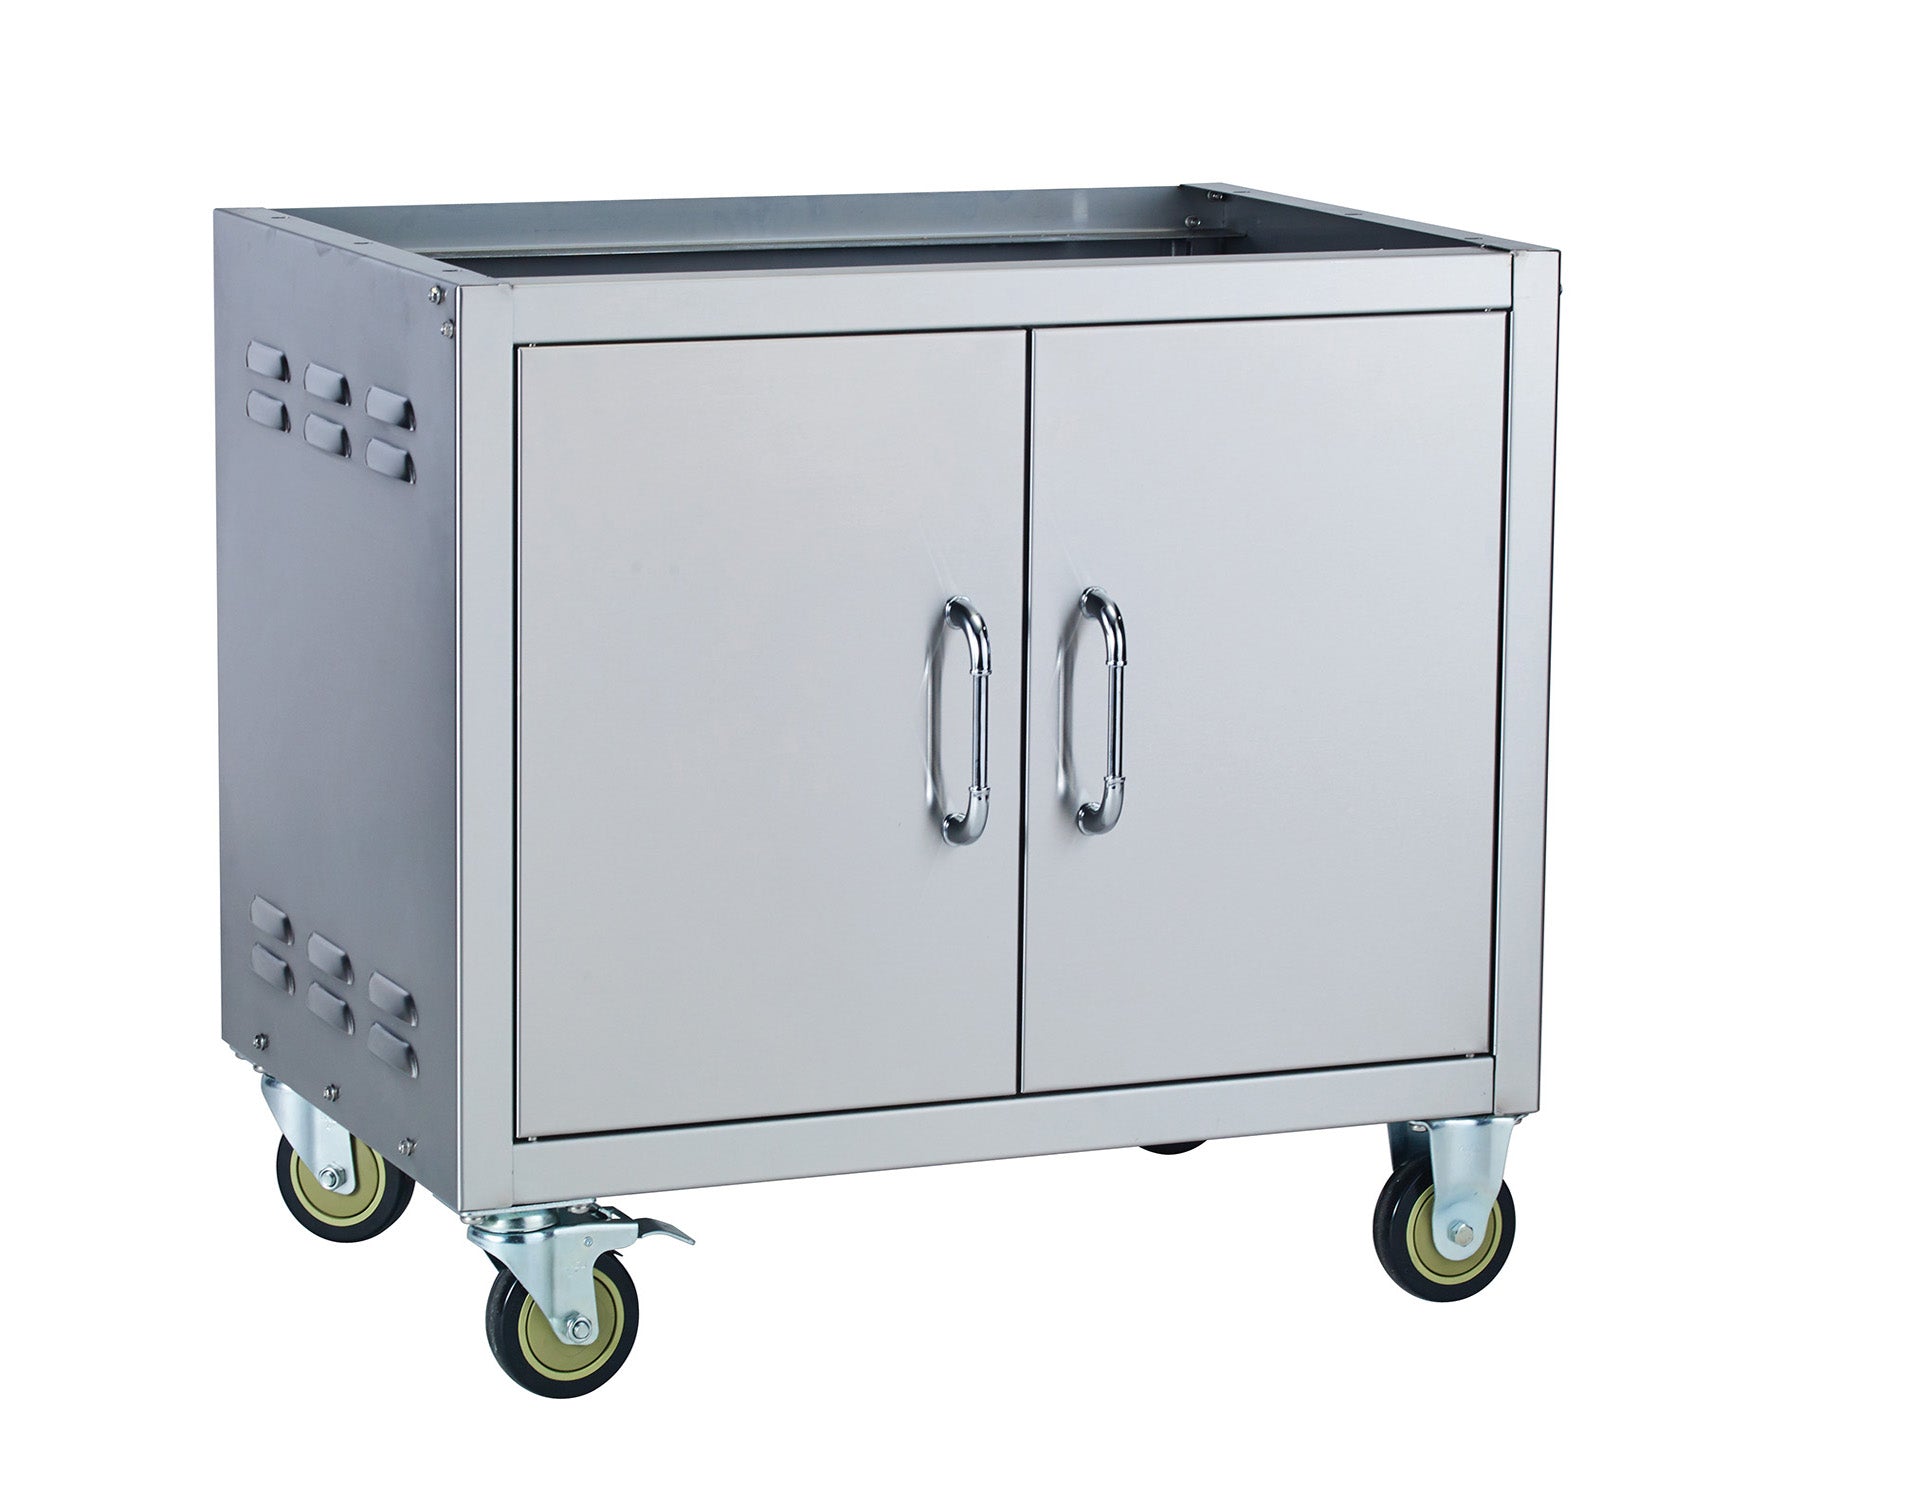 Bull 38" Pedestal Cart Bottom for 38" Grills - Stainless Steel, Portable BBQ Base